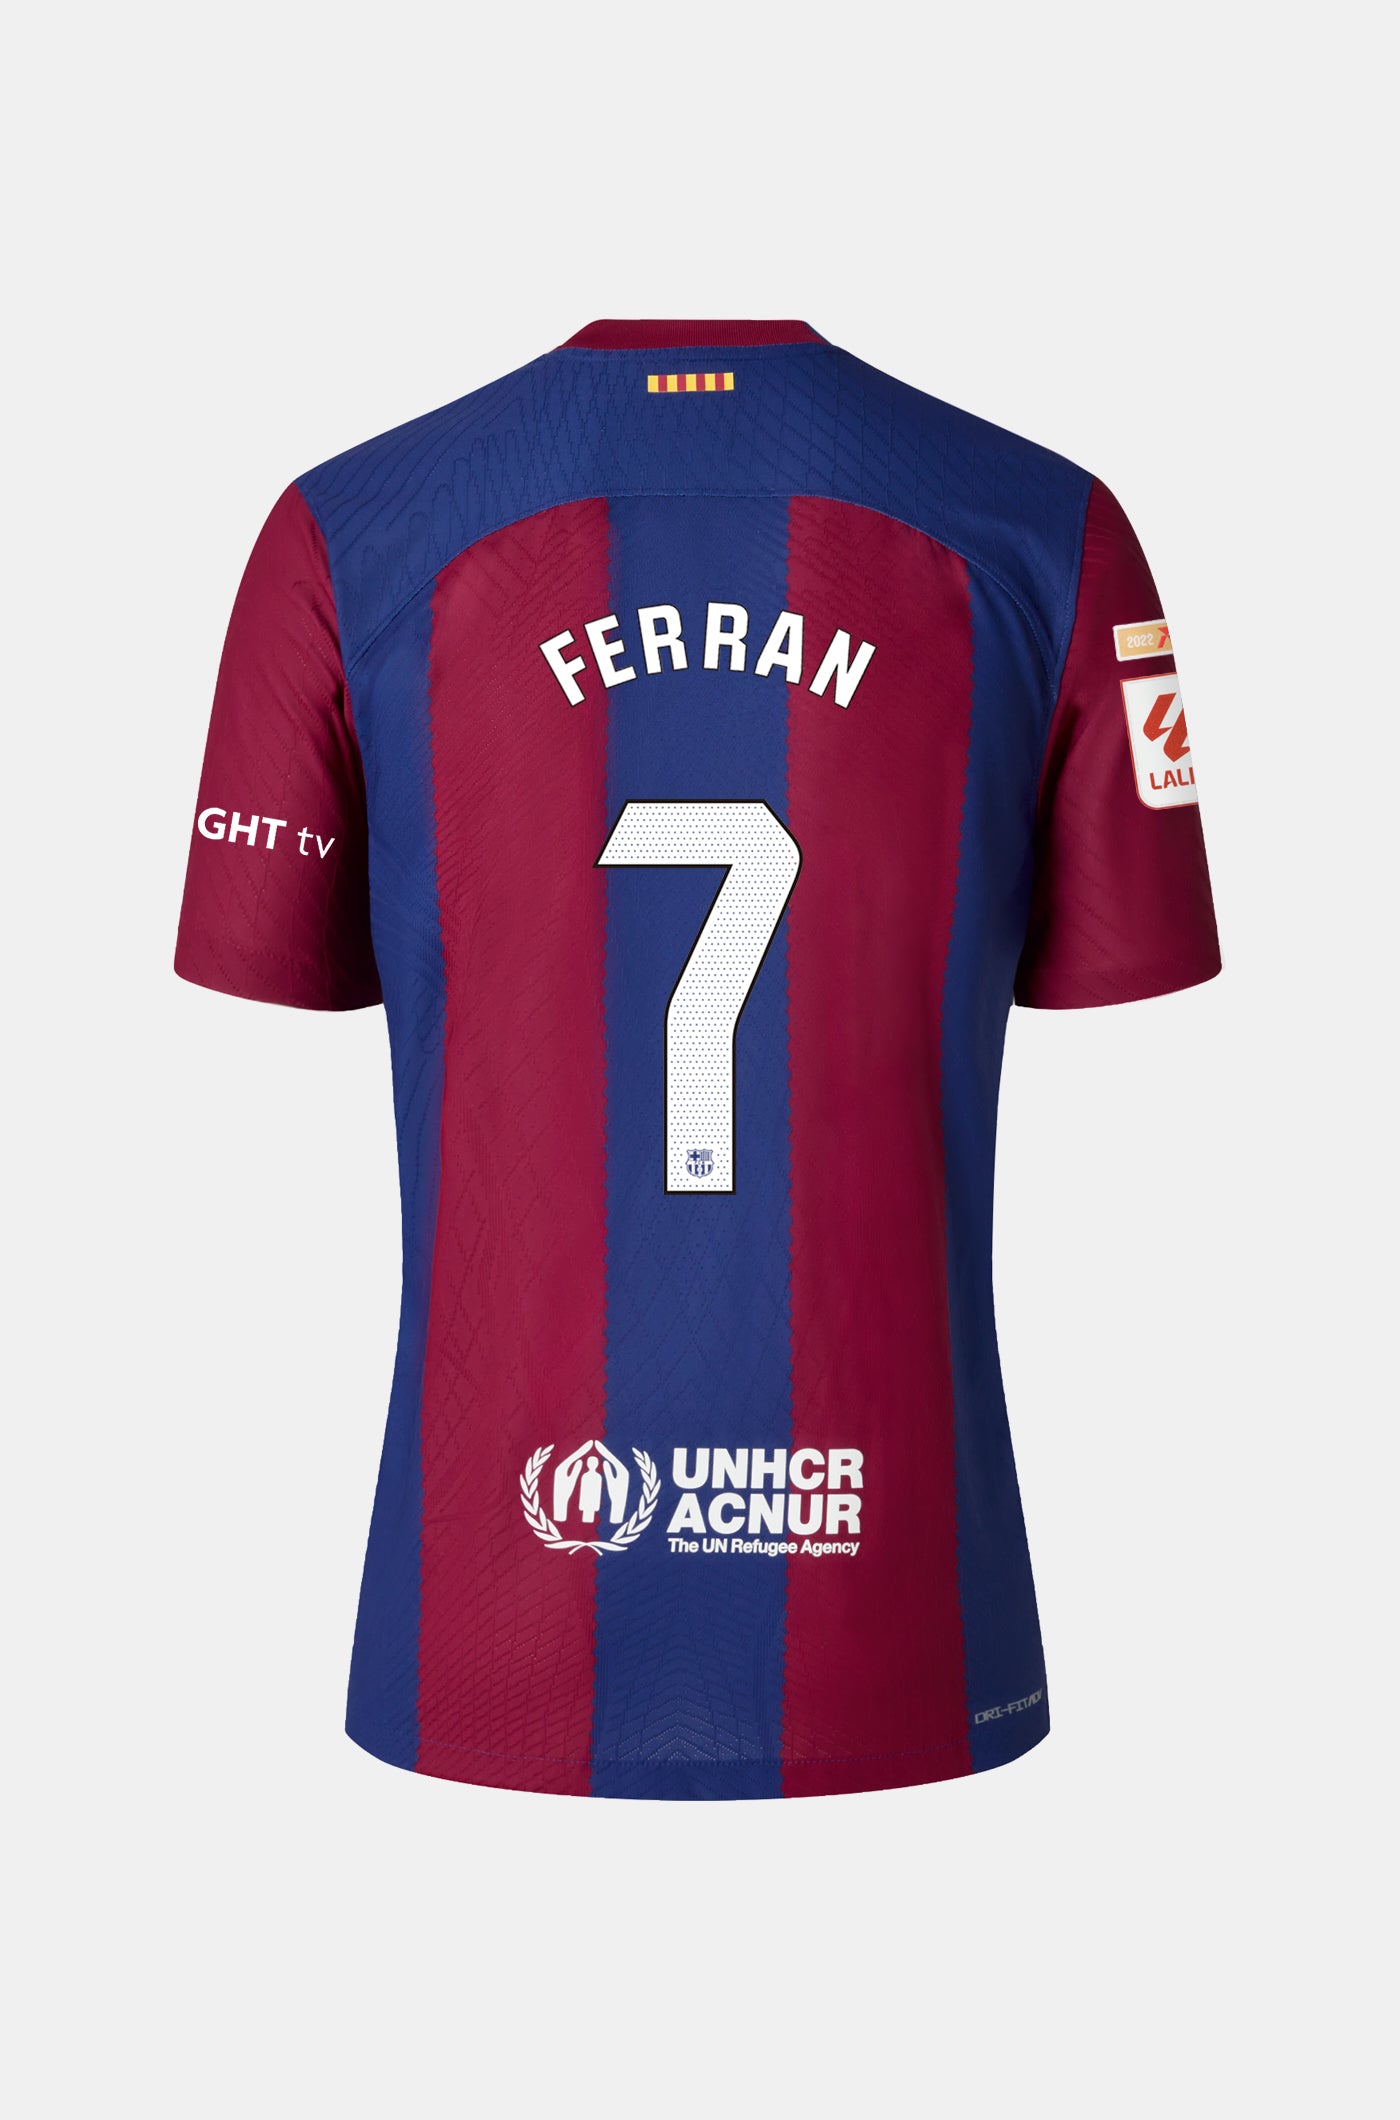 LFP FC Barcelona home shirt 23/24  - FERRAN